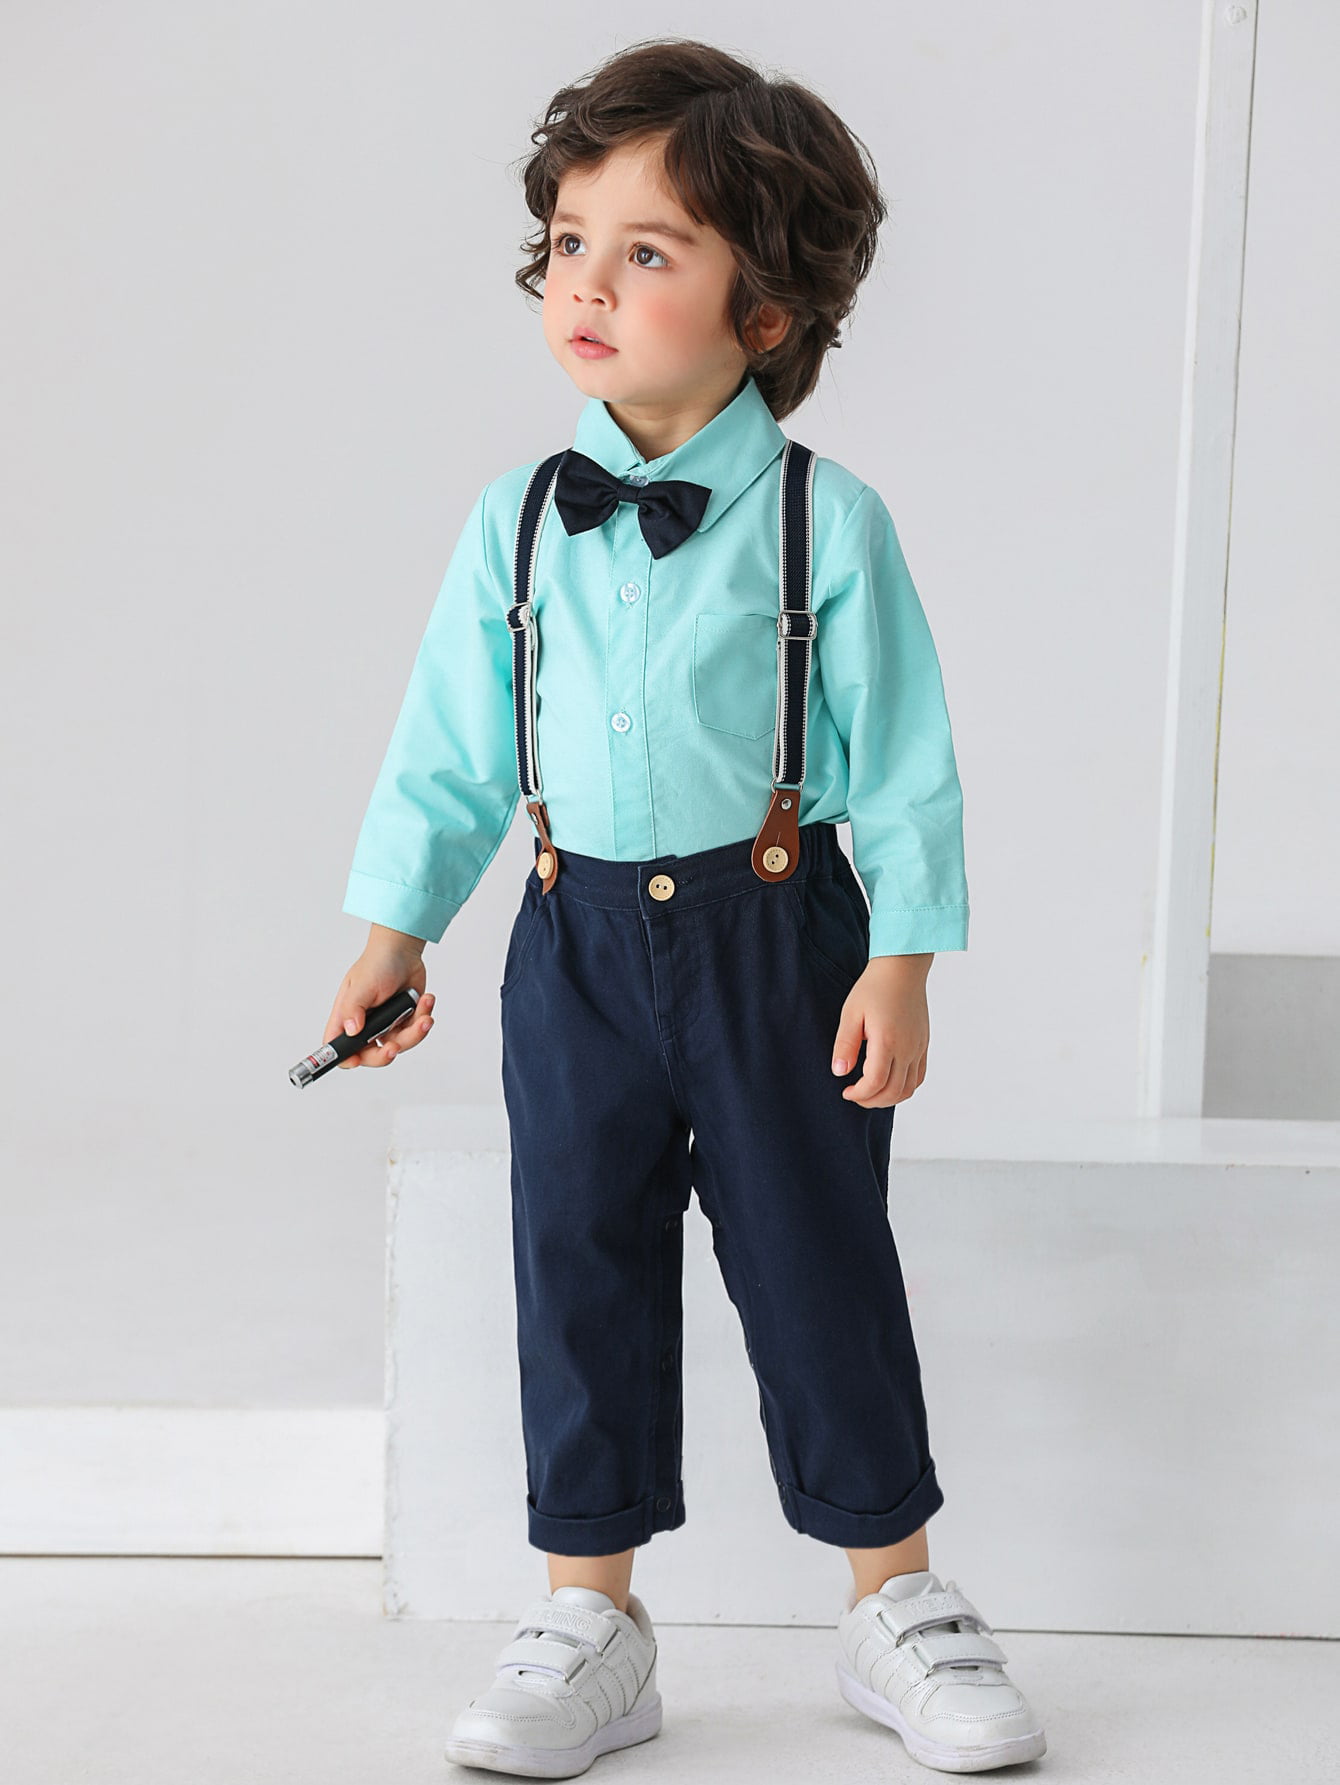 Details about   Newborn Boys 2x Set Bow Tie Long Sleeve Striped Shirt Suspender Short Pants Suit 